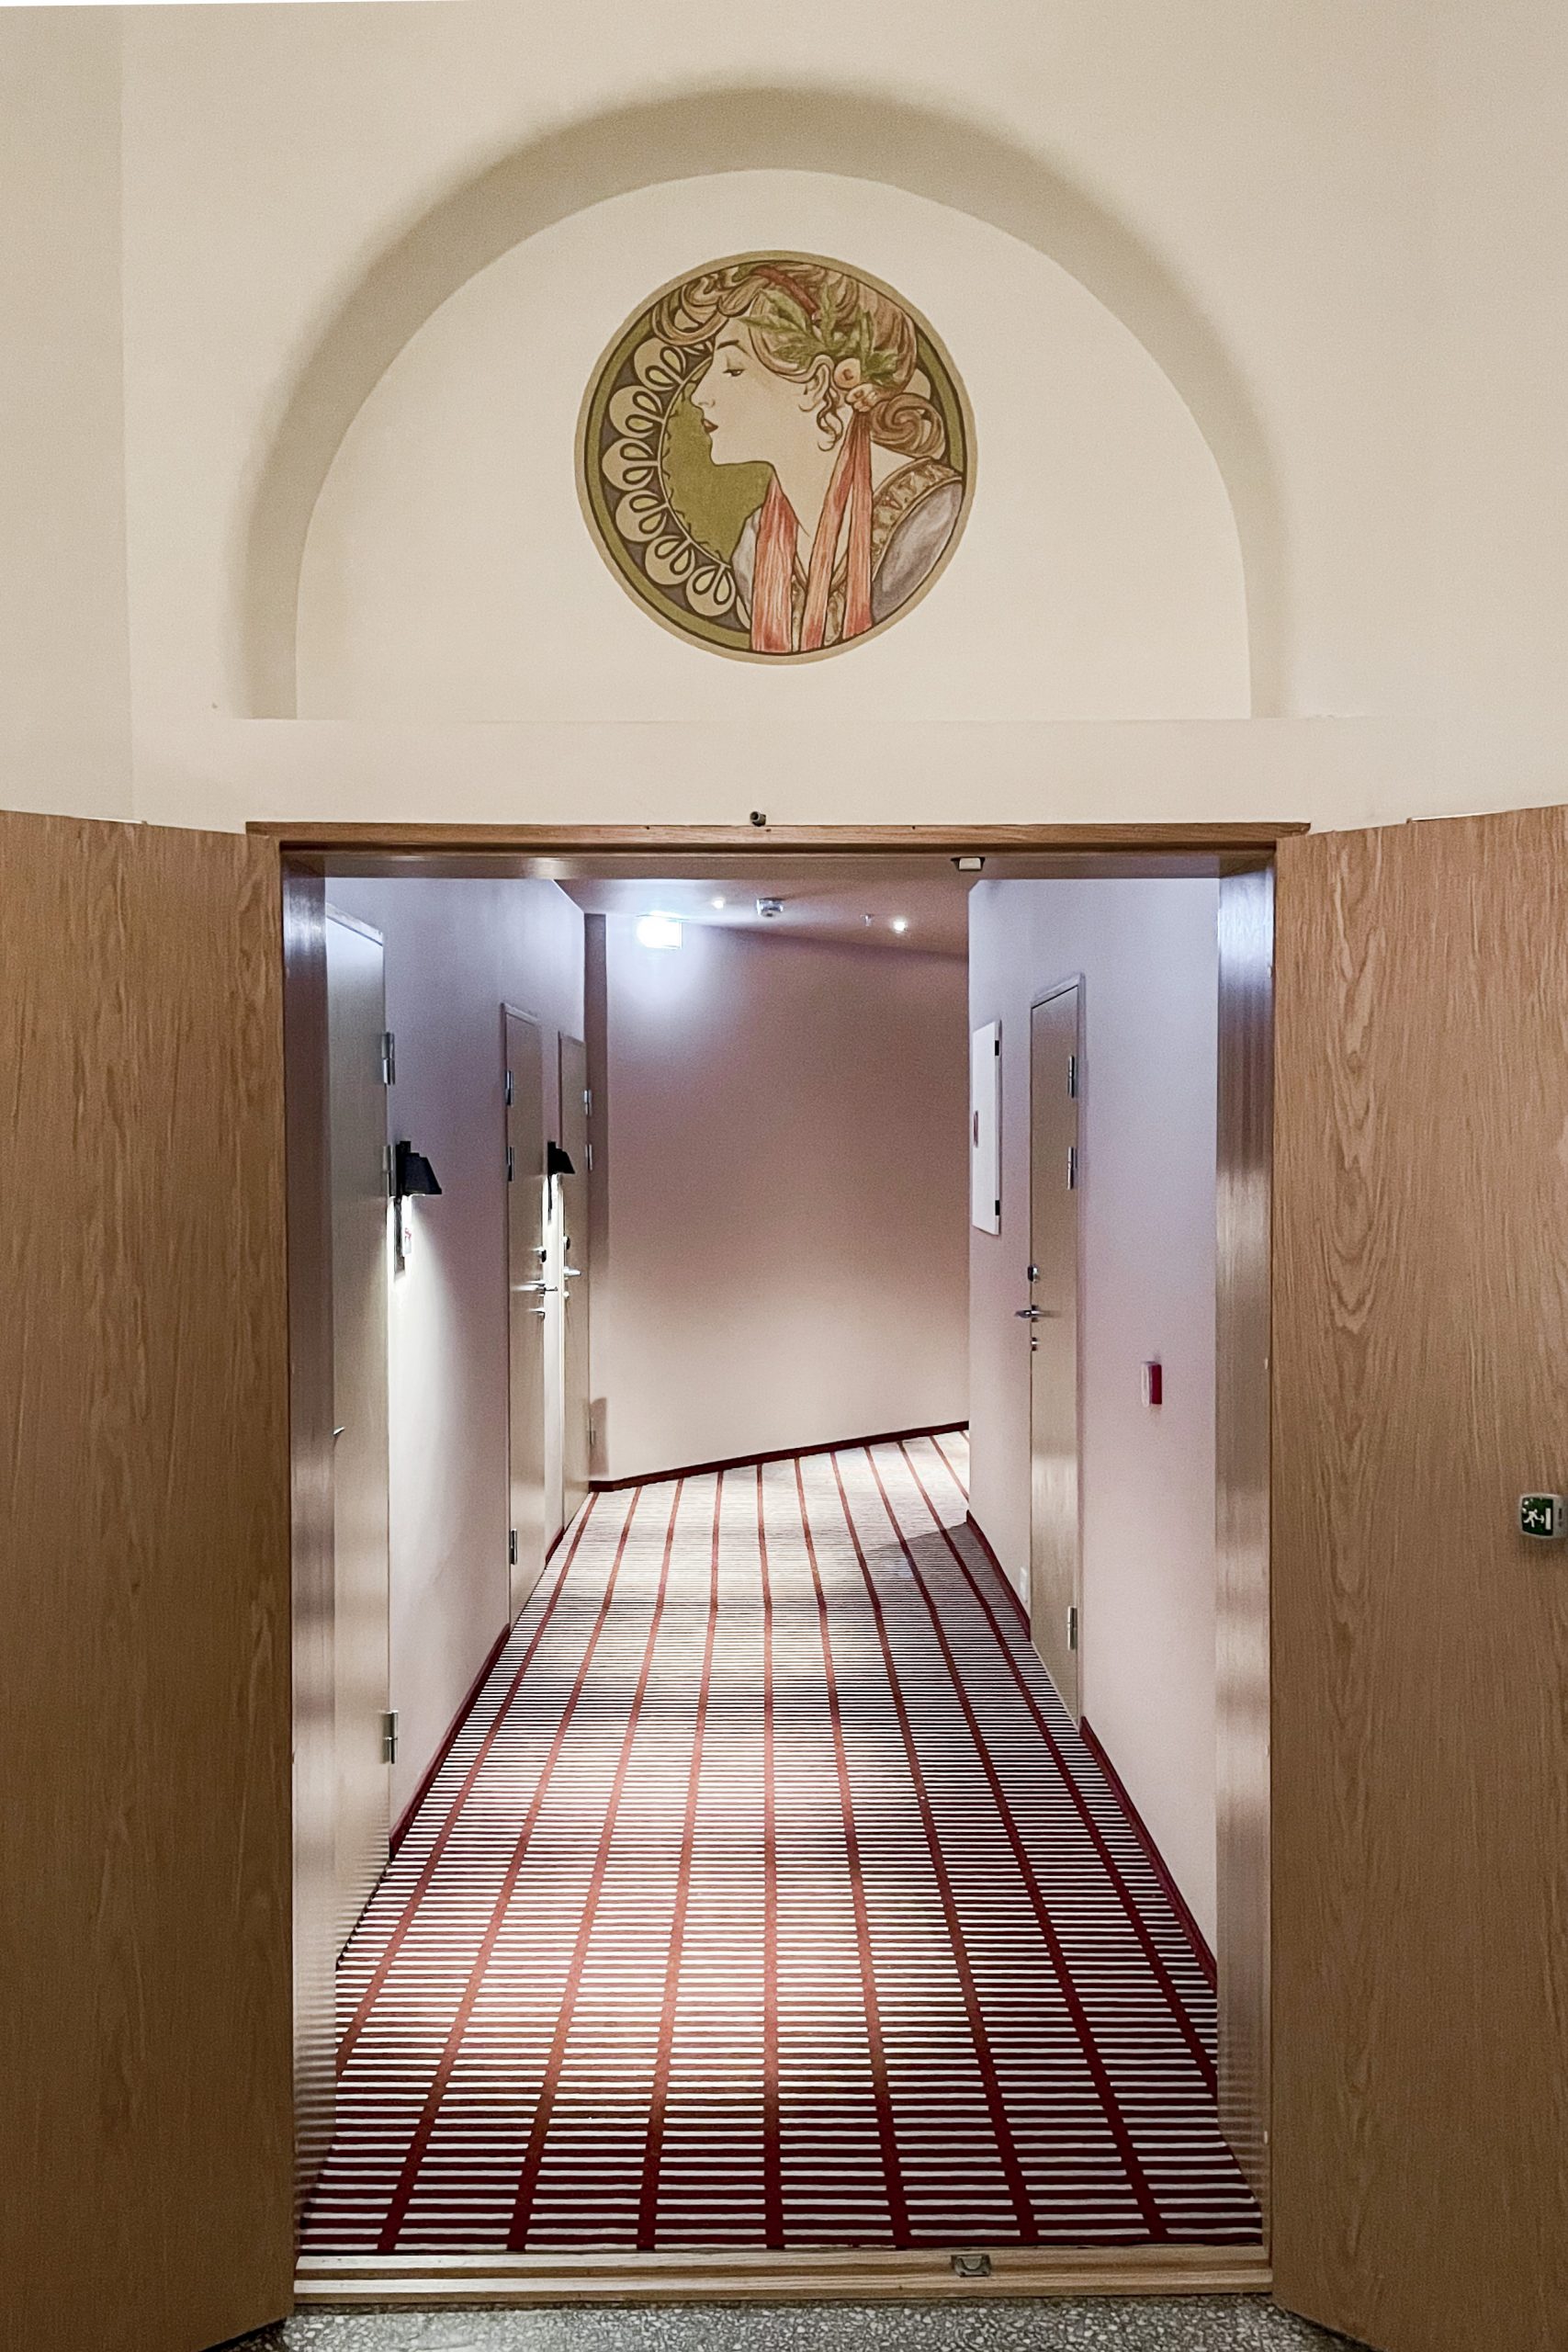 Fotografi som viser en av hotellkorridorene. Gulvet er belagt med et rutete teppe. I bildets forgrunn ser man et opprinnelig maleri i jugendstil plassert over døren.